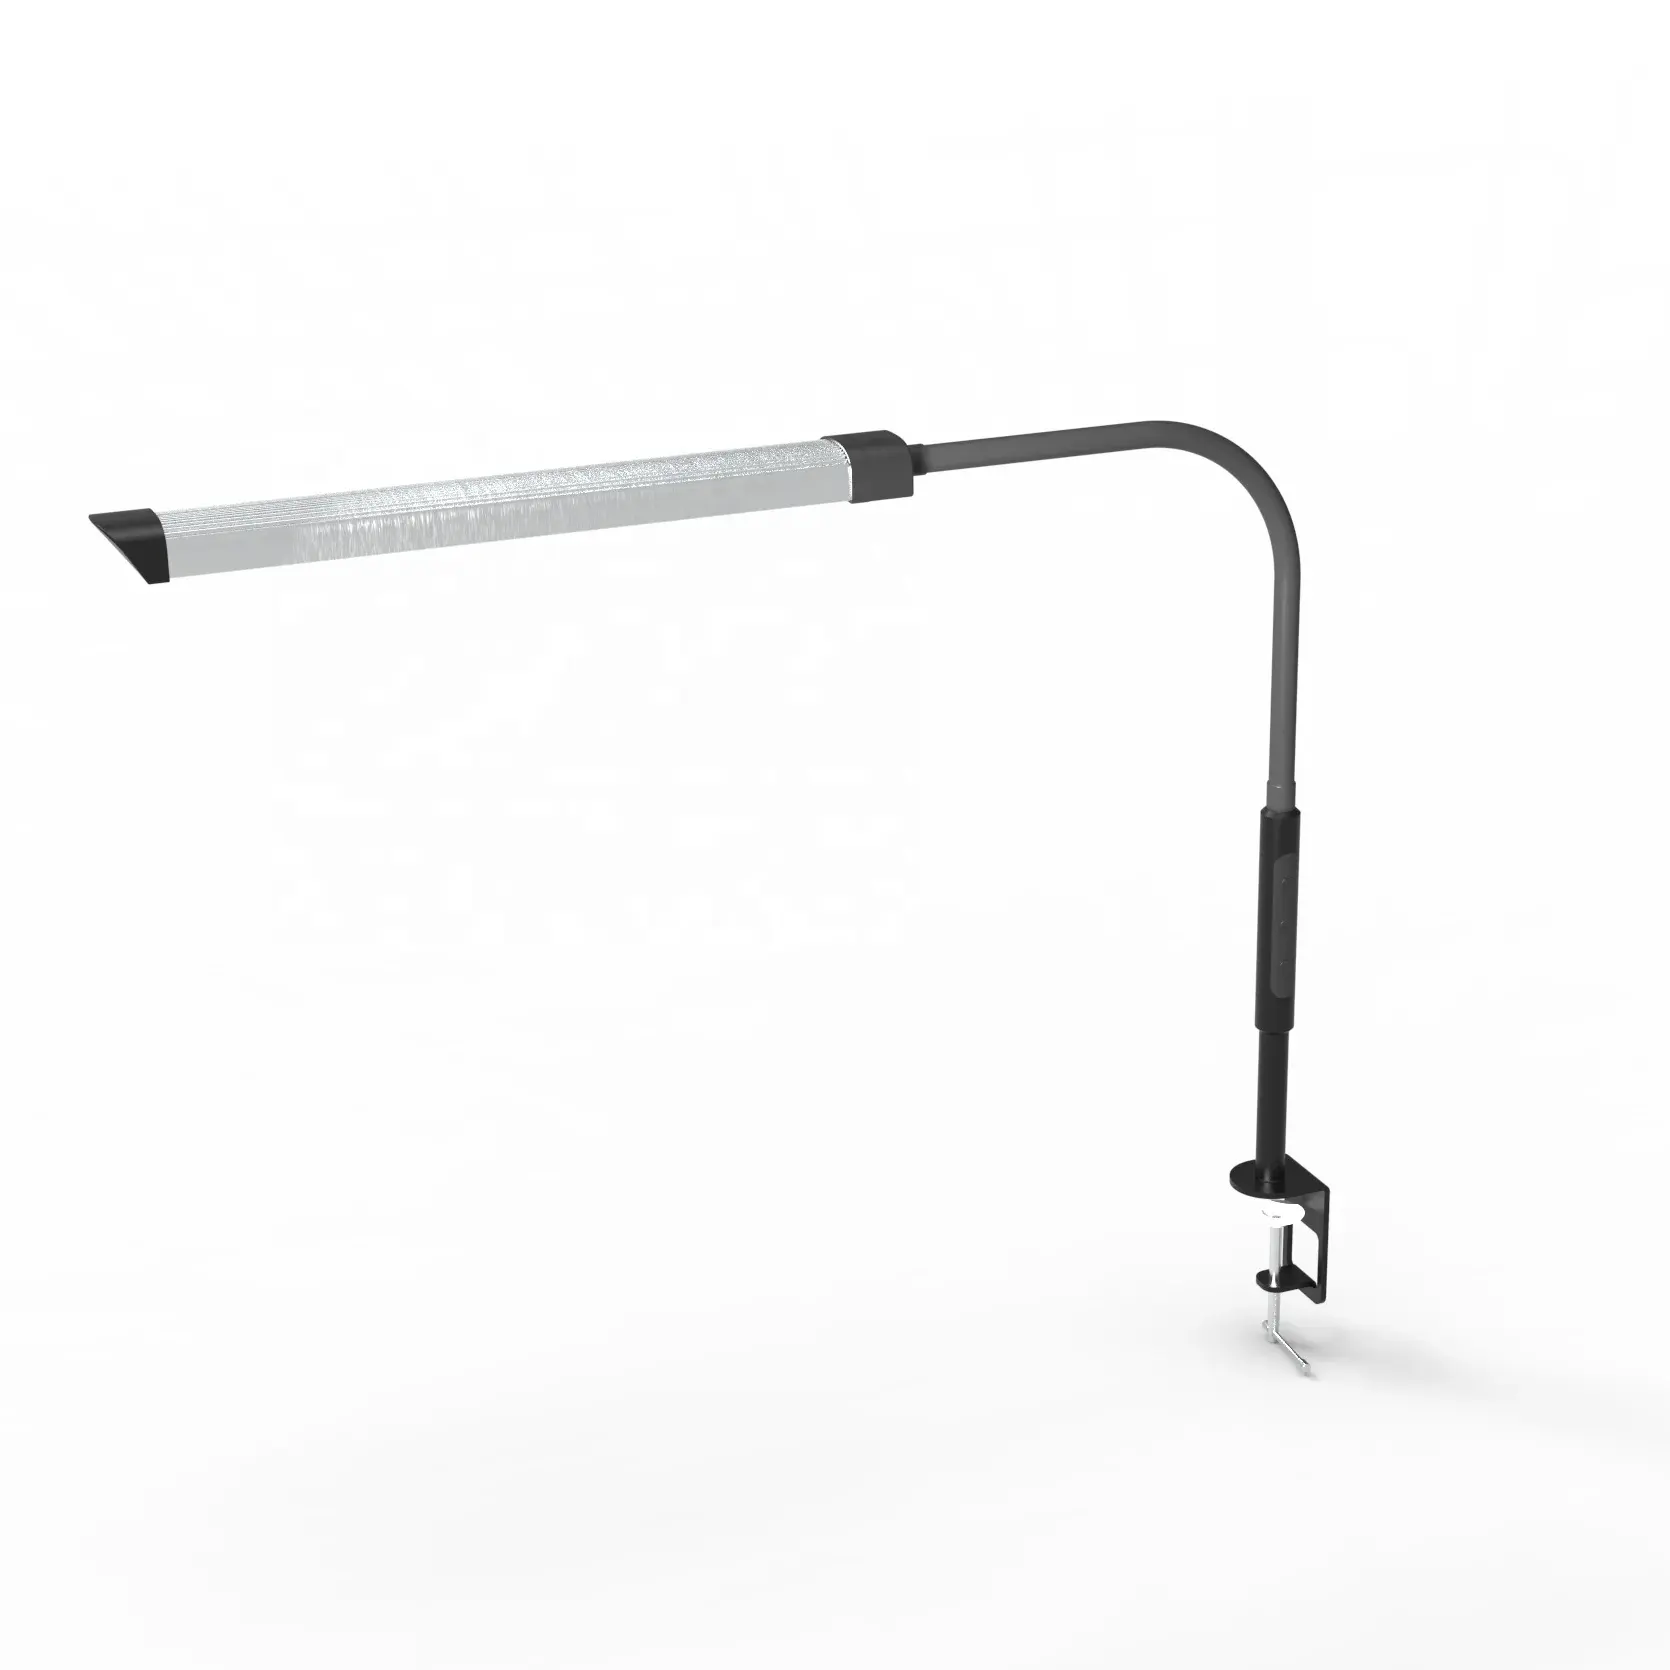 Klem Bureaulamp Met Cilp Swing Arm Tischlampe Flexibele Gooseneck Tafel Led Lamp Lampade Da Tavolo Led